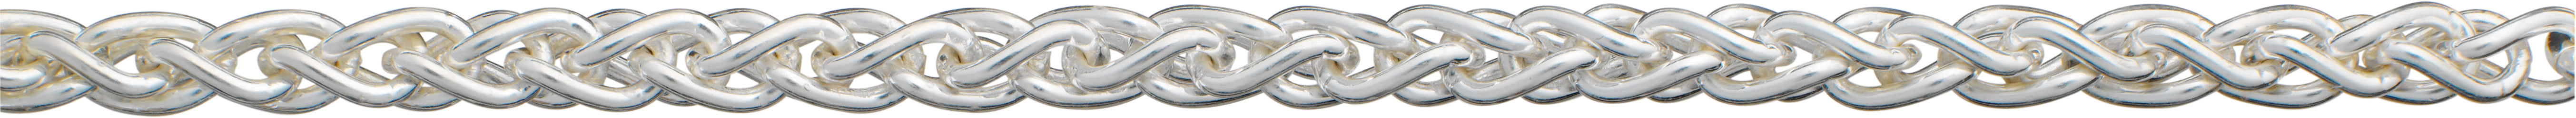 Zopfkette Silber 925/- Ø 4,20mm